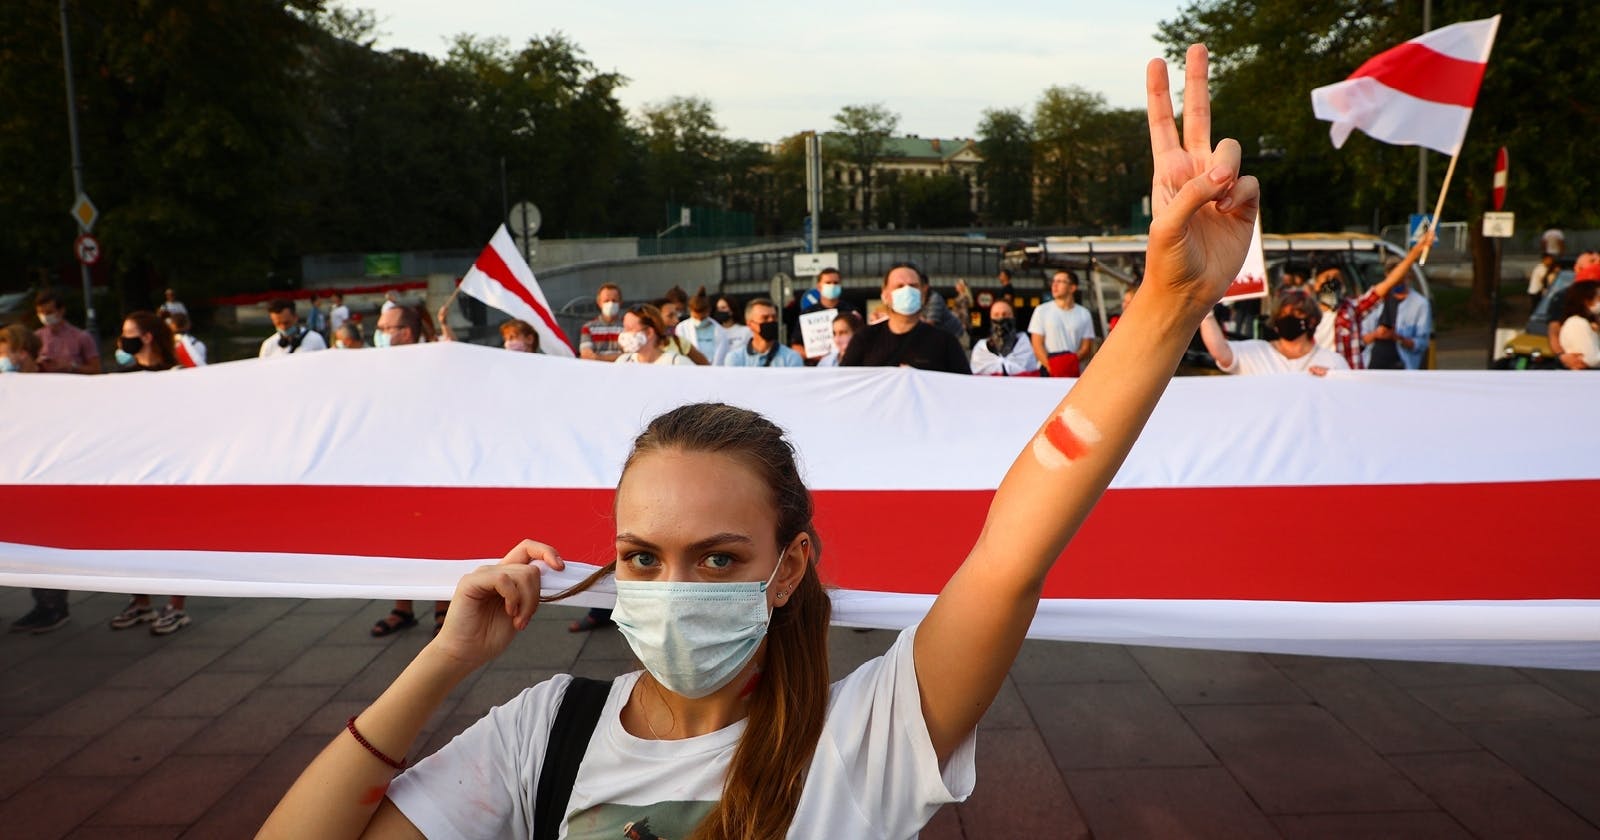 Eine junge Frau im weißen T-Shirt steht vor einer Gruppe von Leuten, die einen riesigen Banner in den belarusischen Nationalfarben vor sich herträgt. Sie reckt den linken Arm hoch, mit der Hand formt sie das "Peace"-Zeichen